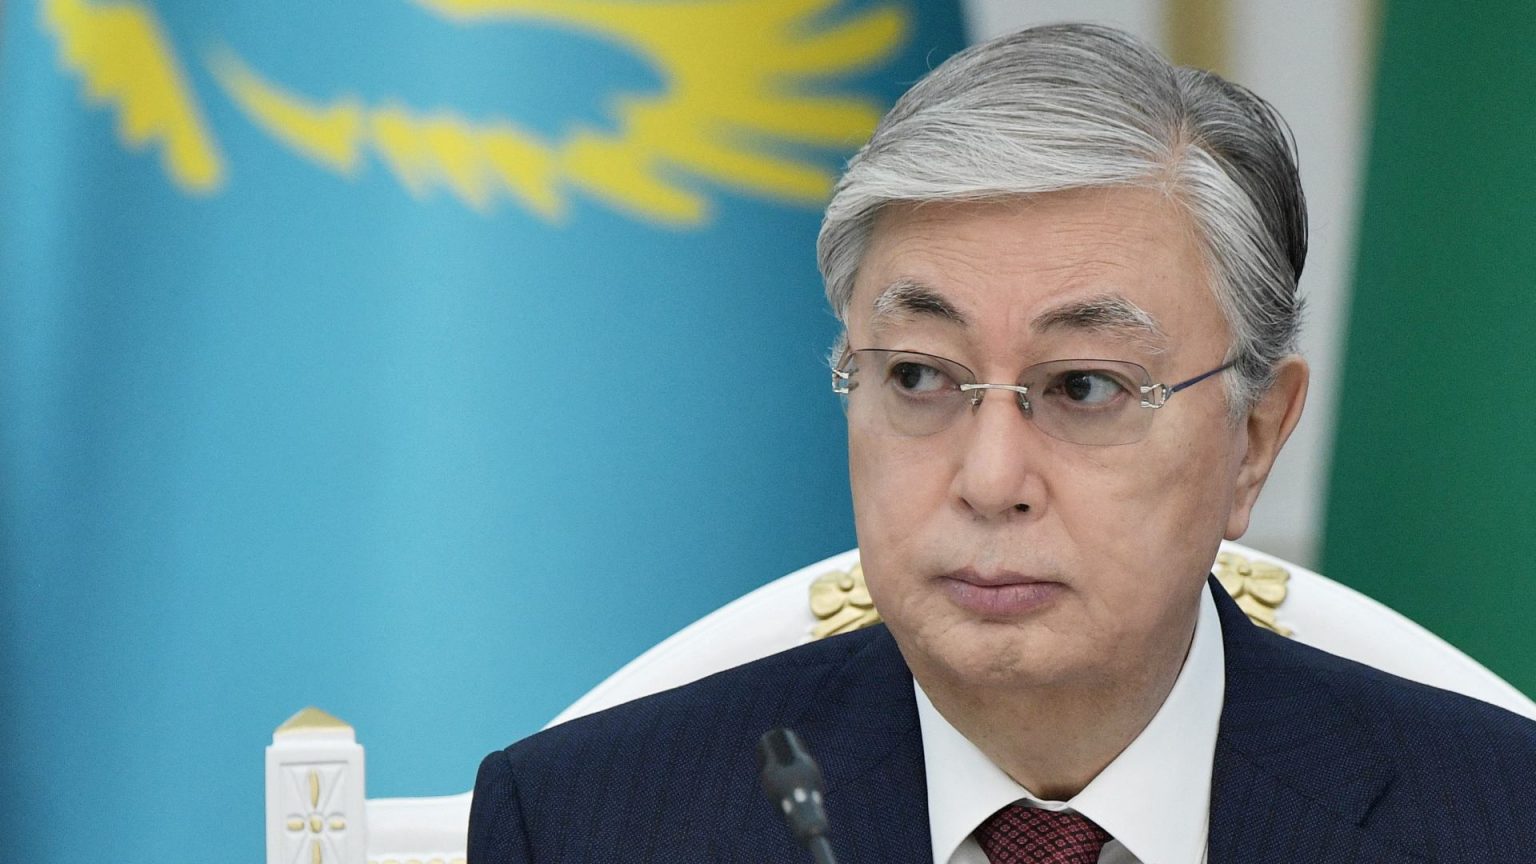 La subida en el precio del gas provoca la dimisión del Gobierno de Kazajistán